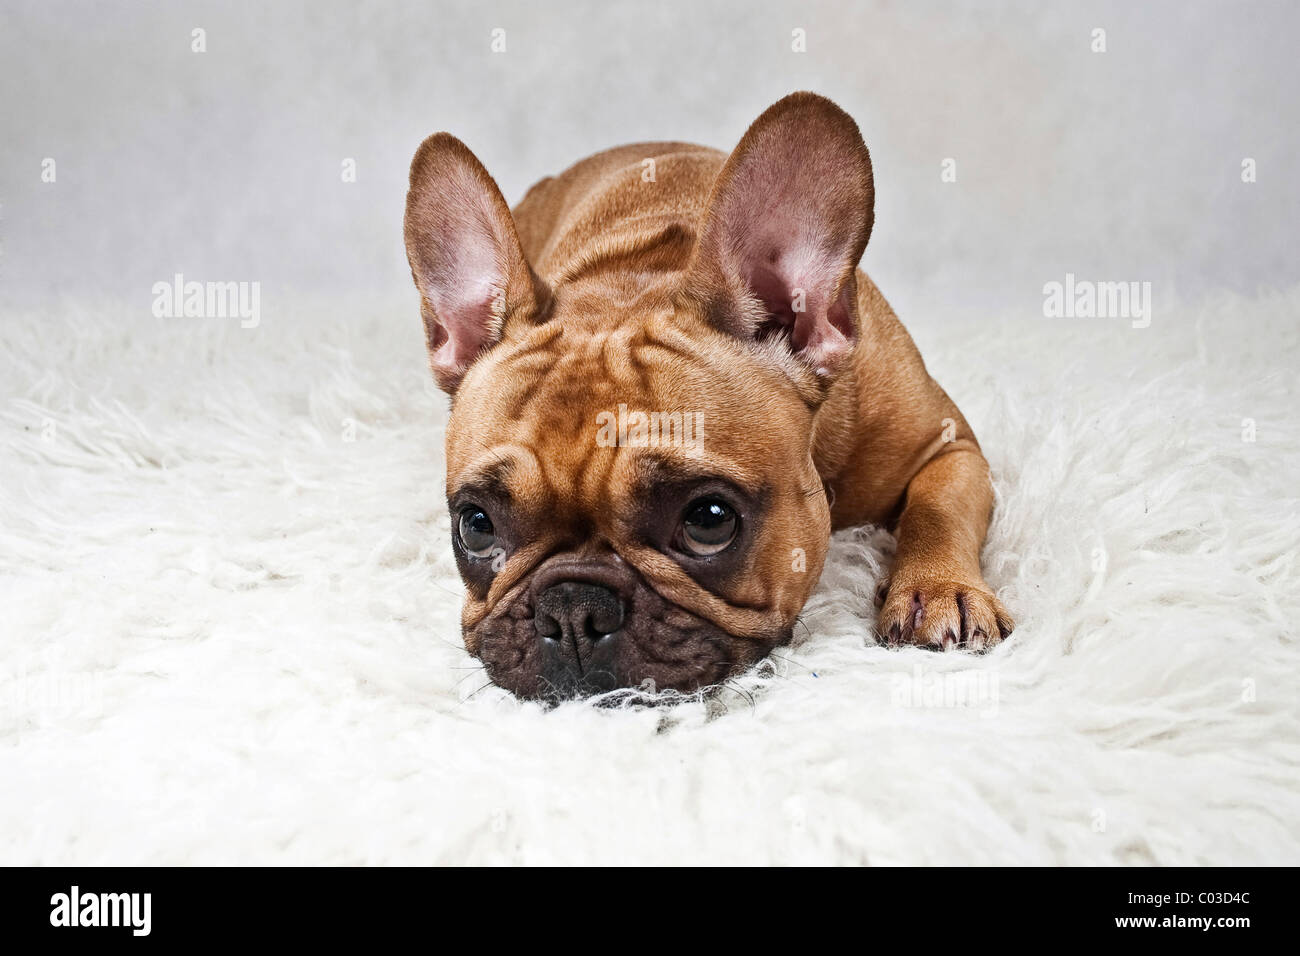 Französische Bulldogge legen den Kopf auf weißen Plüsch Decke  Stockfotografie - Alamy